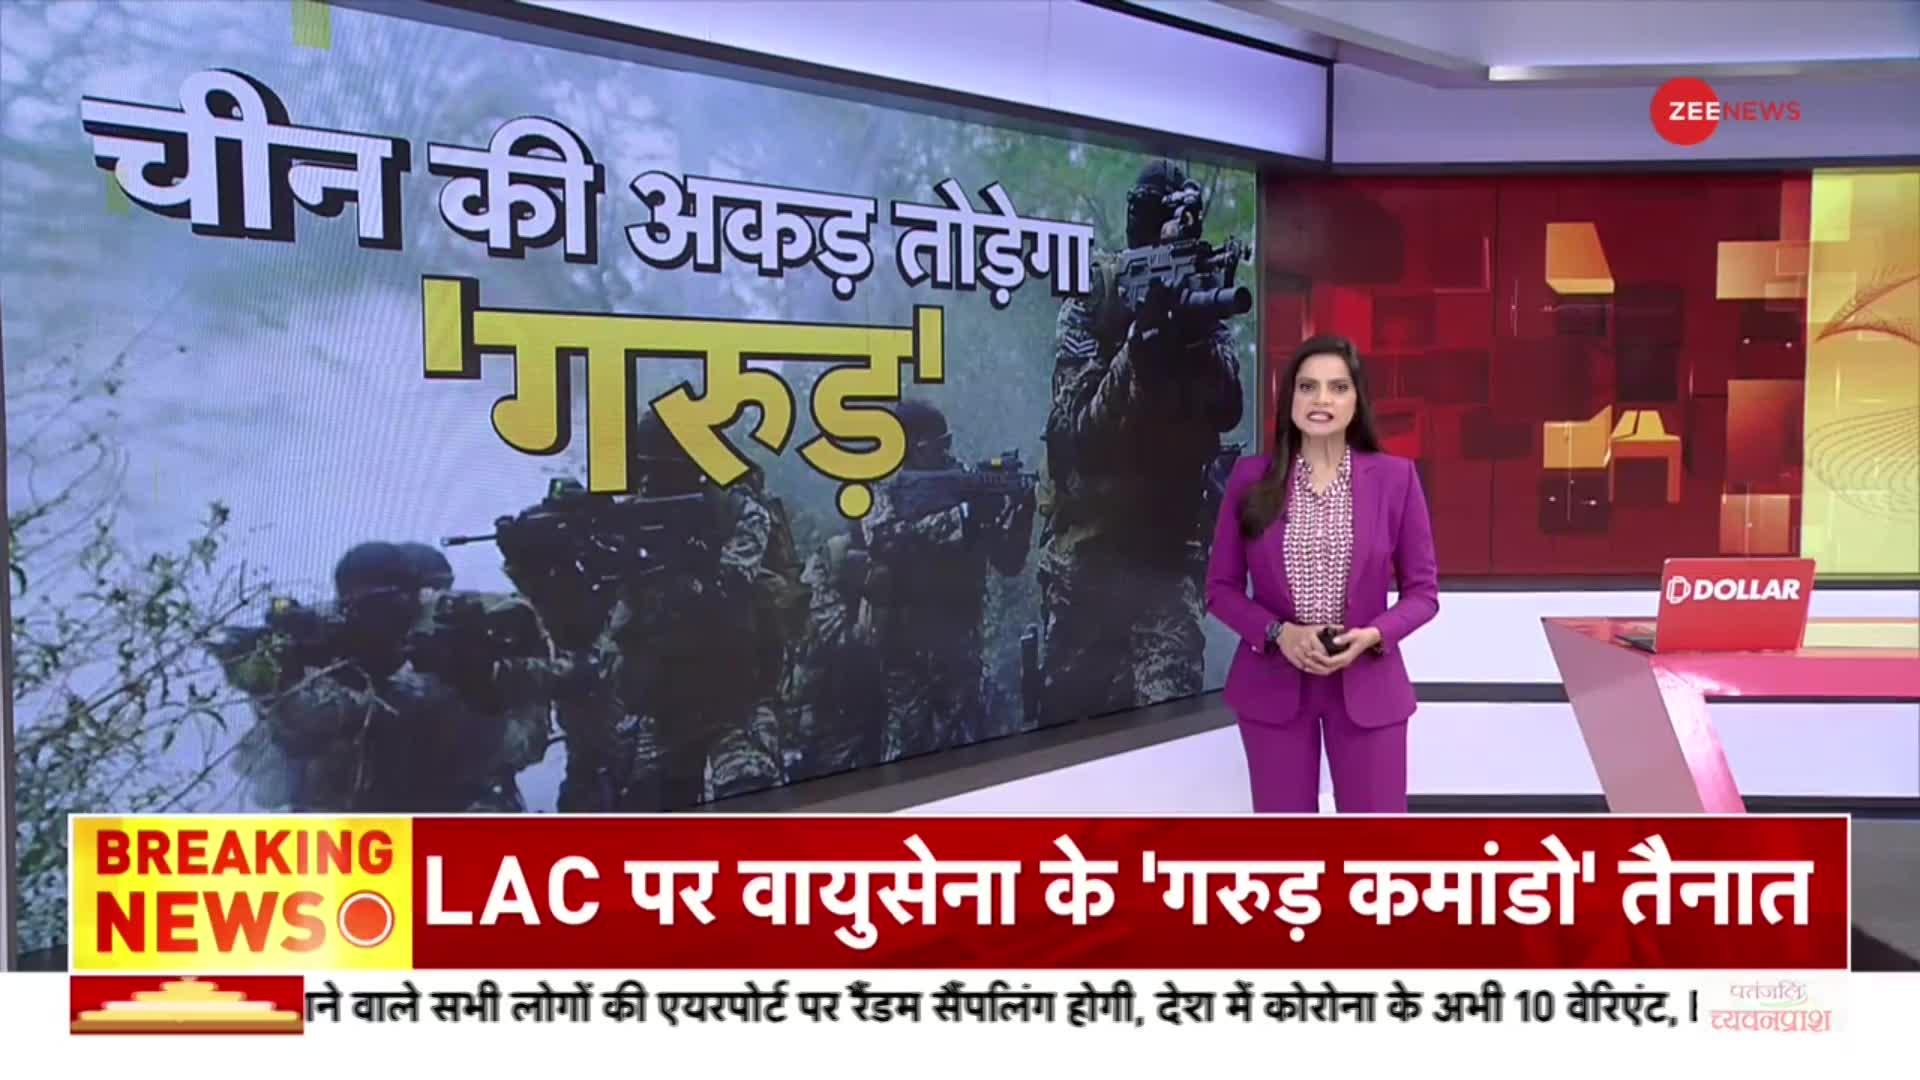 Garud Commando News: LAC पर चीन की अकड़ तोड़ेगा 'गरुड़'! चीनी सेना का सबसे खतरनाक कमांडो से सामना